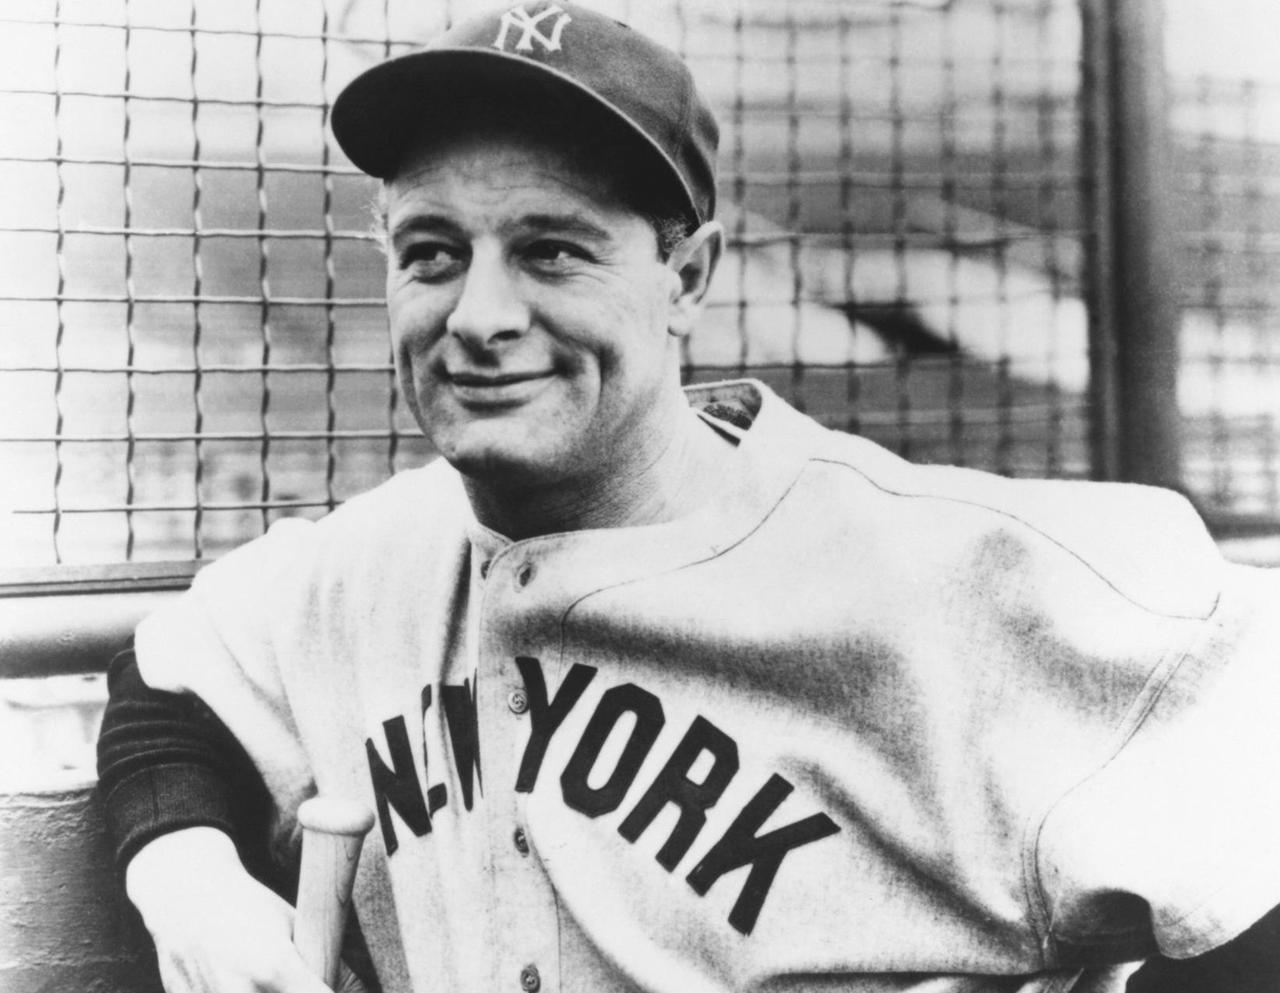 Ein Porträt von Lou Gehrig von den New York Yankees aus dem Jahr 1932.